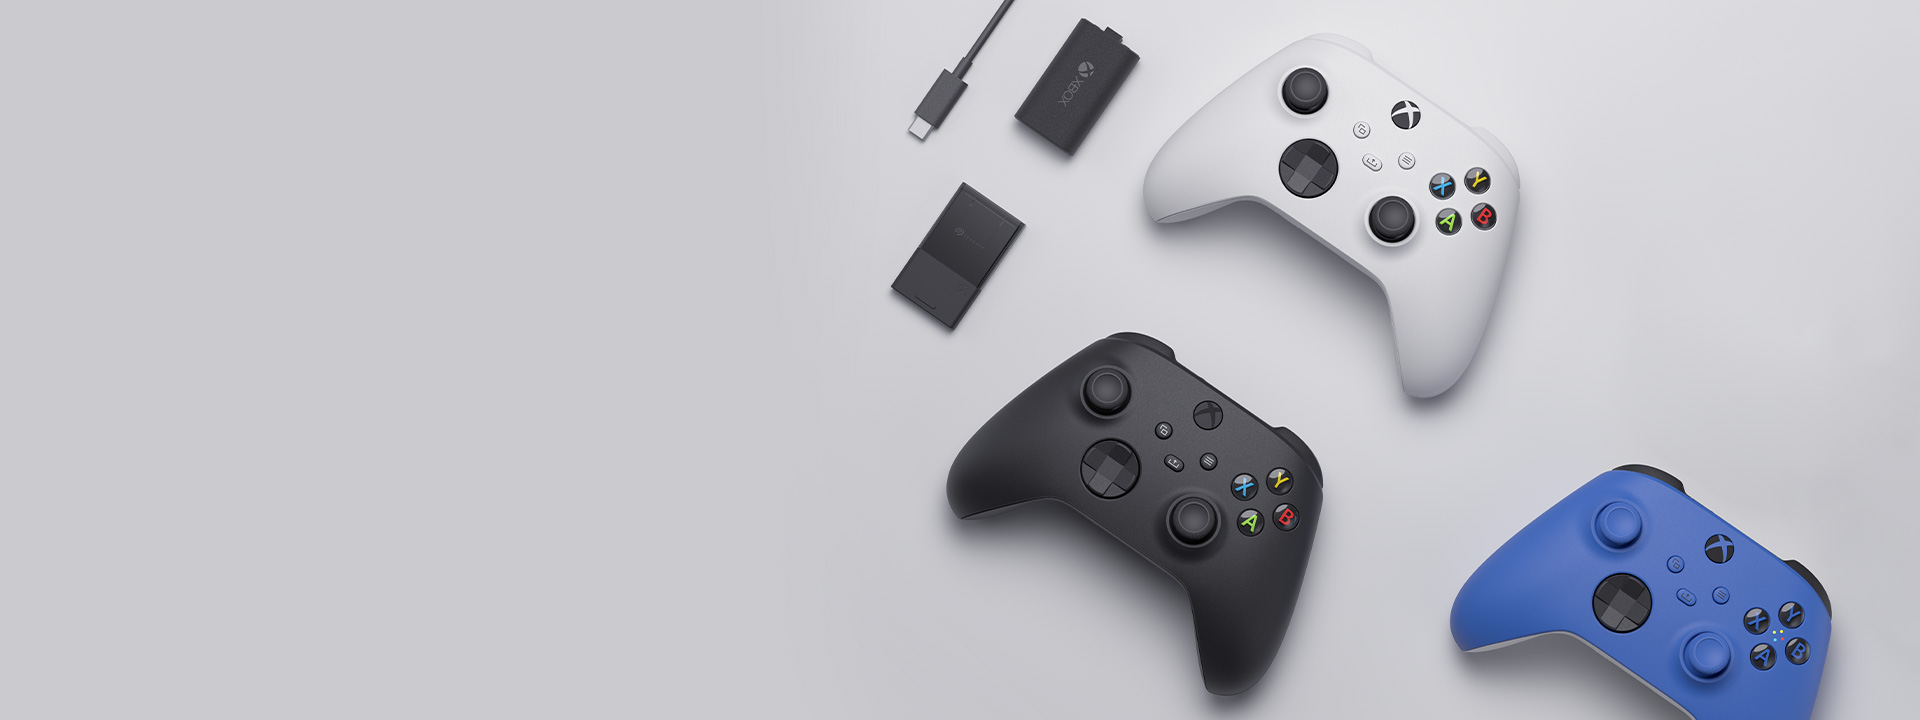 Διάφορα αξεσουάρ Xbox συμπεριλαμβανομένου του ασύρματου χειριστηρίου Xbox, του κιτ Play and Charge και της κάρτας επέκτασης χώρου αποθήκευσης Seagate για Xbox Series X|S το ένα δίπλα στο άλλο.